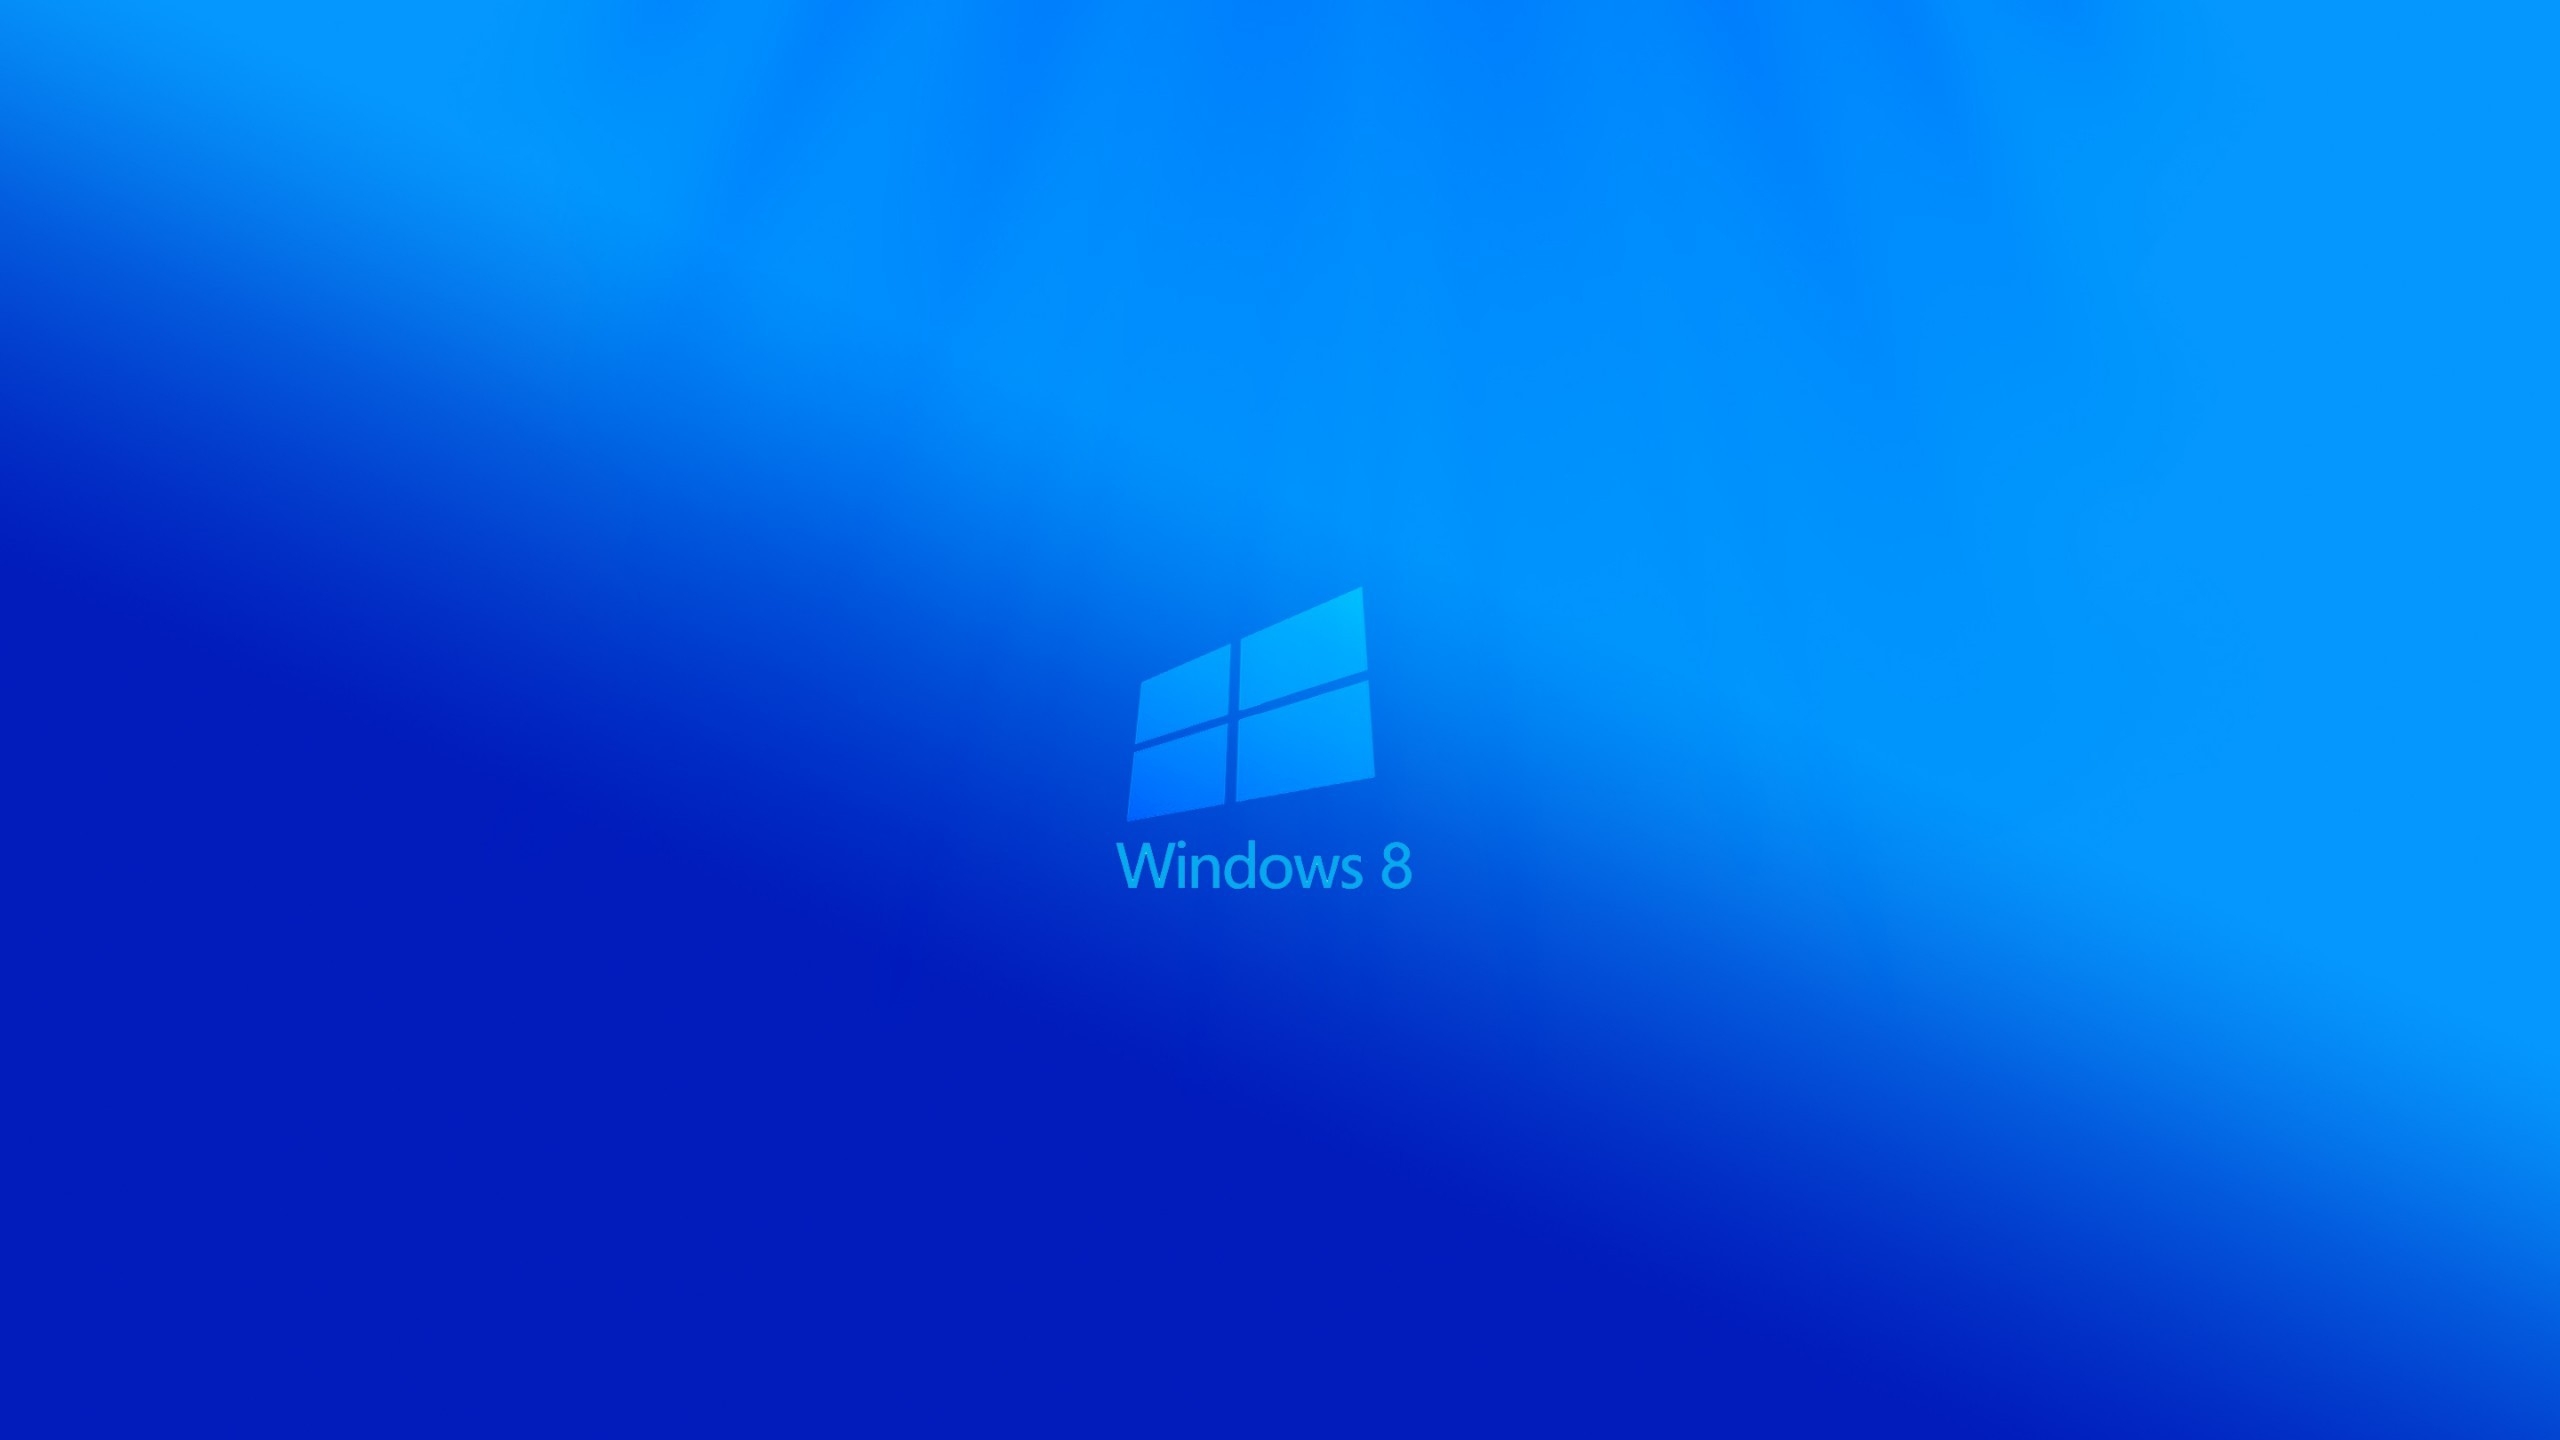 Windows 8 Light for 2560x1440 HDTV resolution